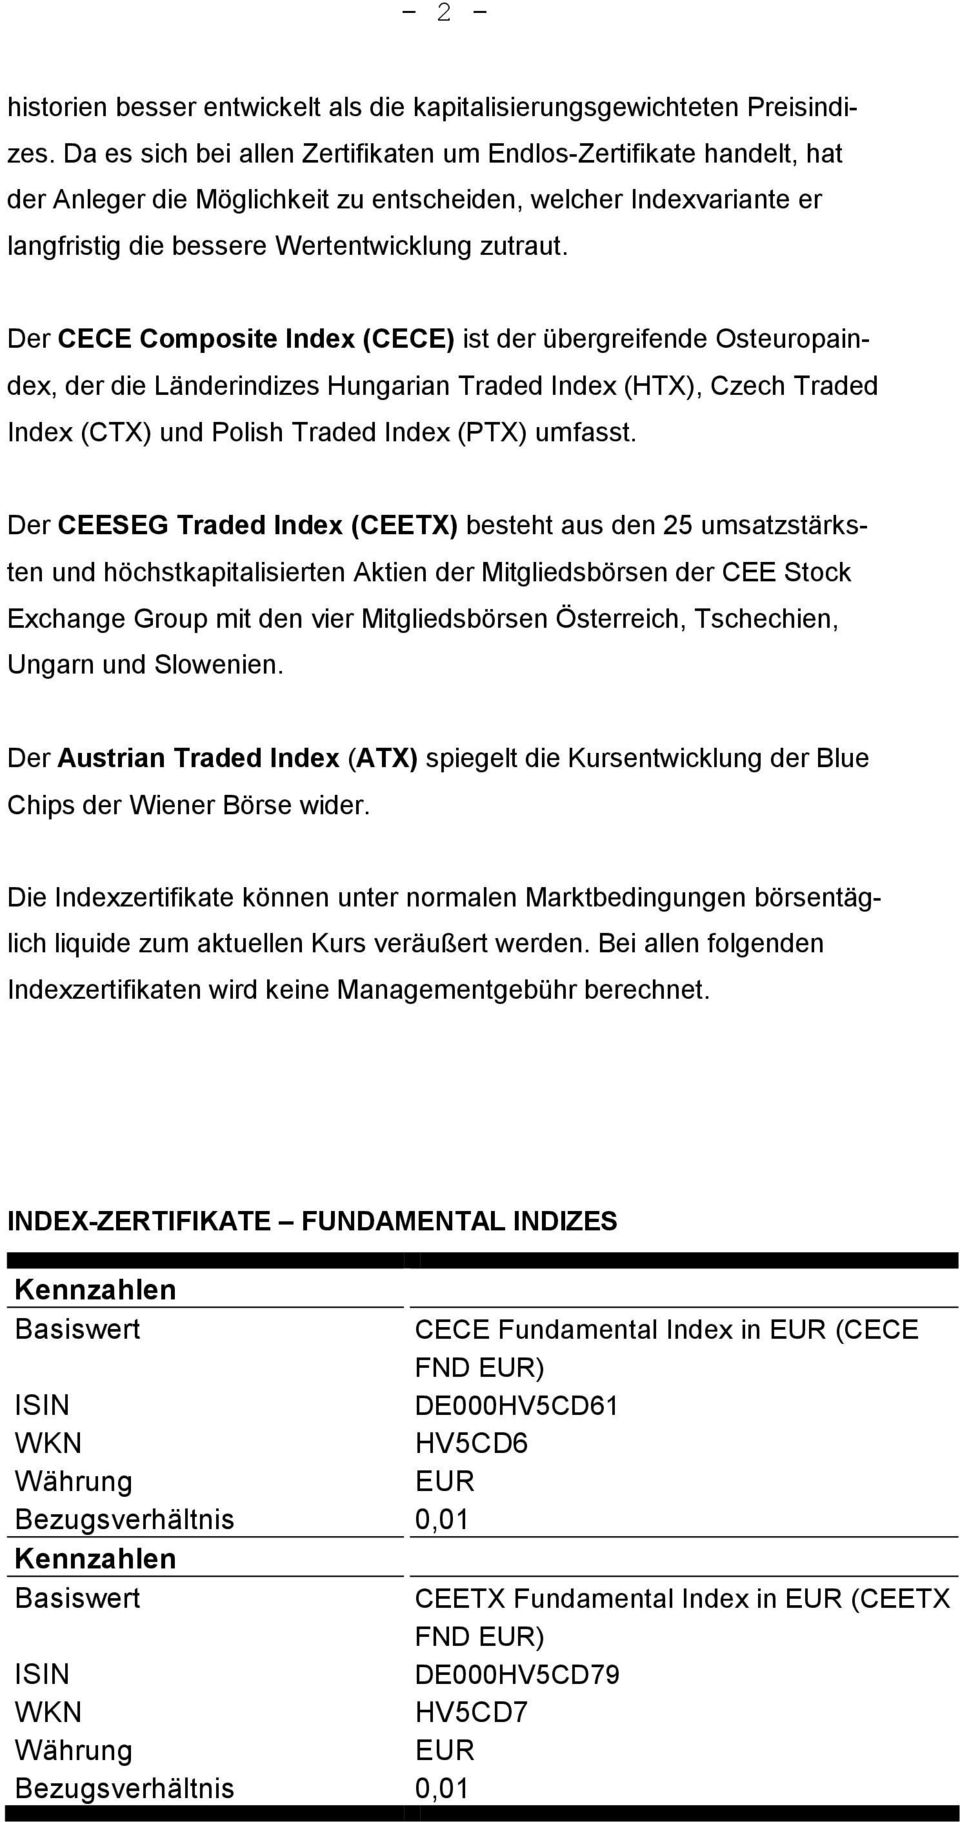 Der CECE Composite Index (CECE) ist der übergreifende Osteuropaindex, der die Länderindizes Hungarian Traded Index (HTX), Czech Traded Index (CTX) und Polish Traded Index (PTX) umfasst.